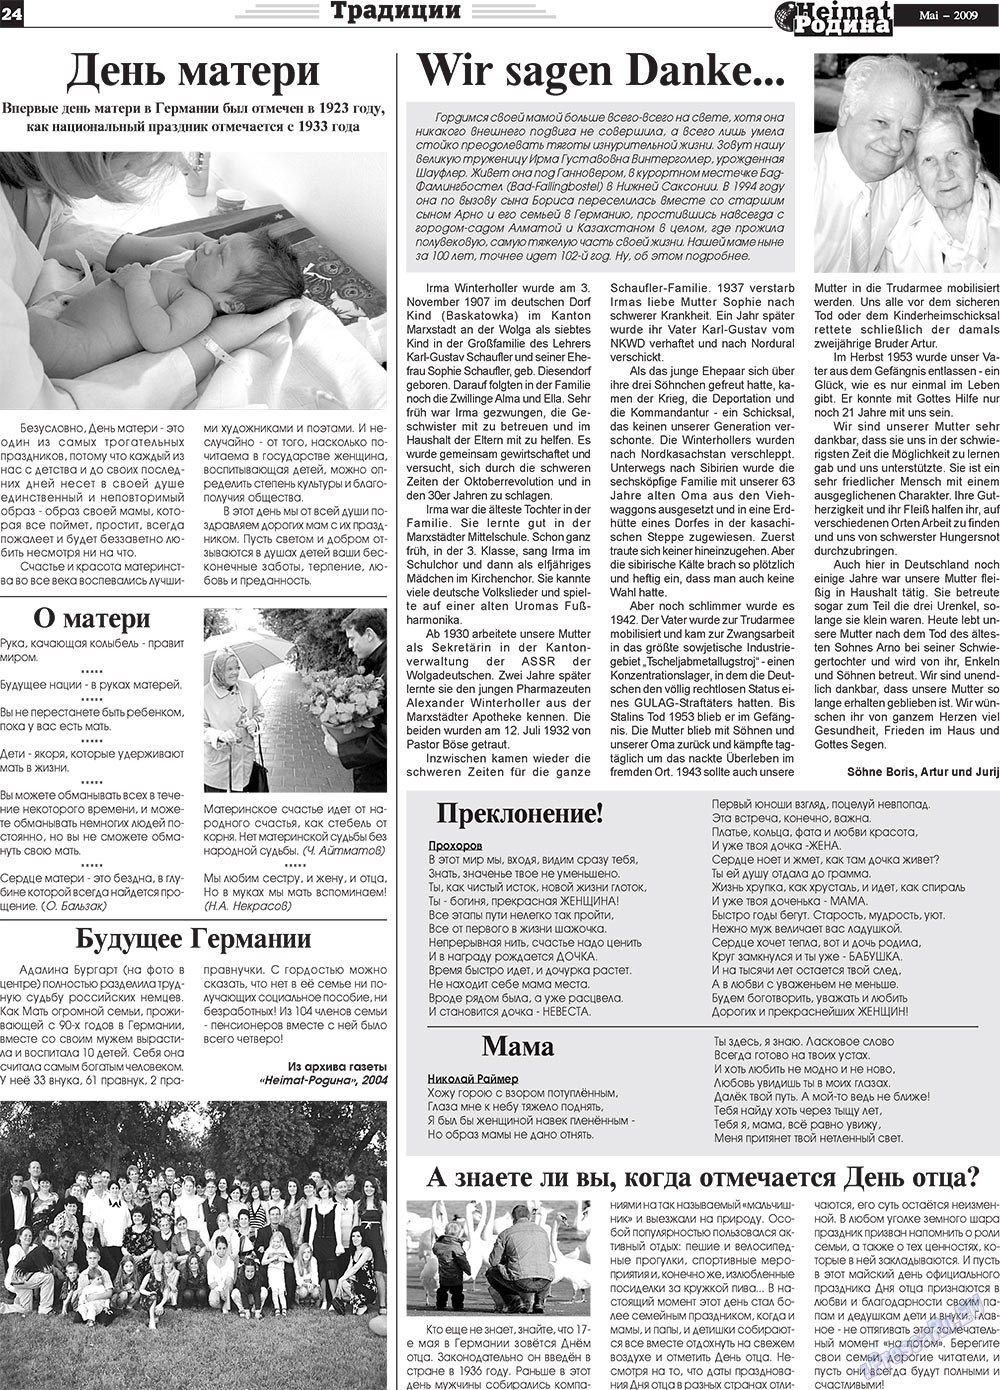 Heimat-Родина (газета). 2009 год, номер 5, стр. 24